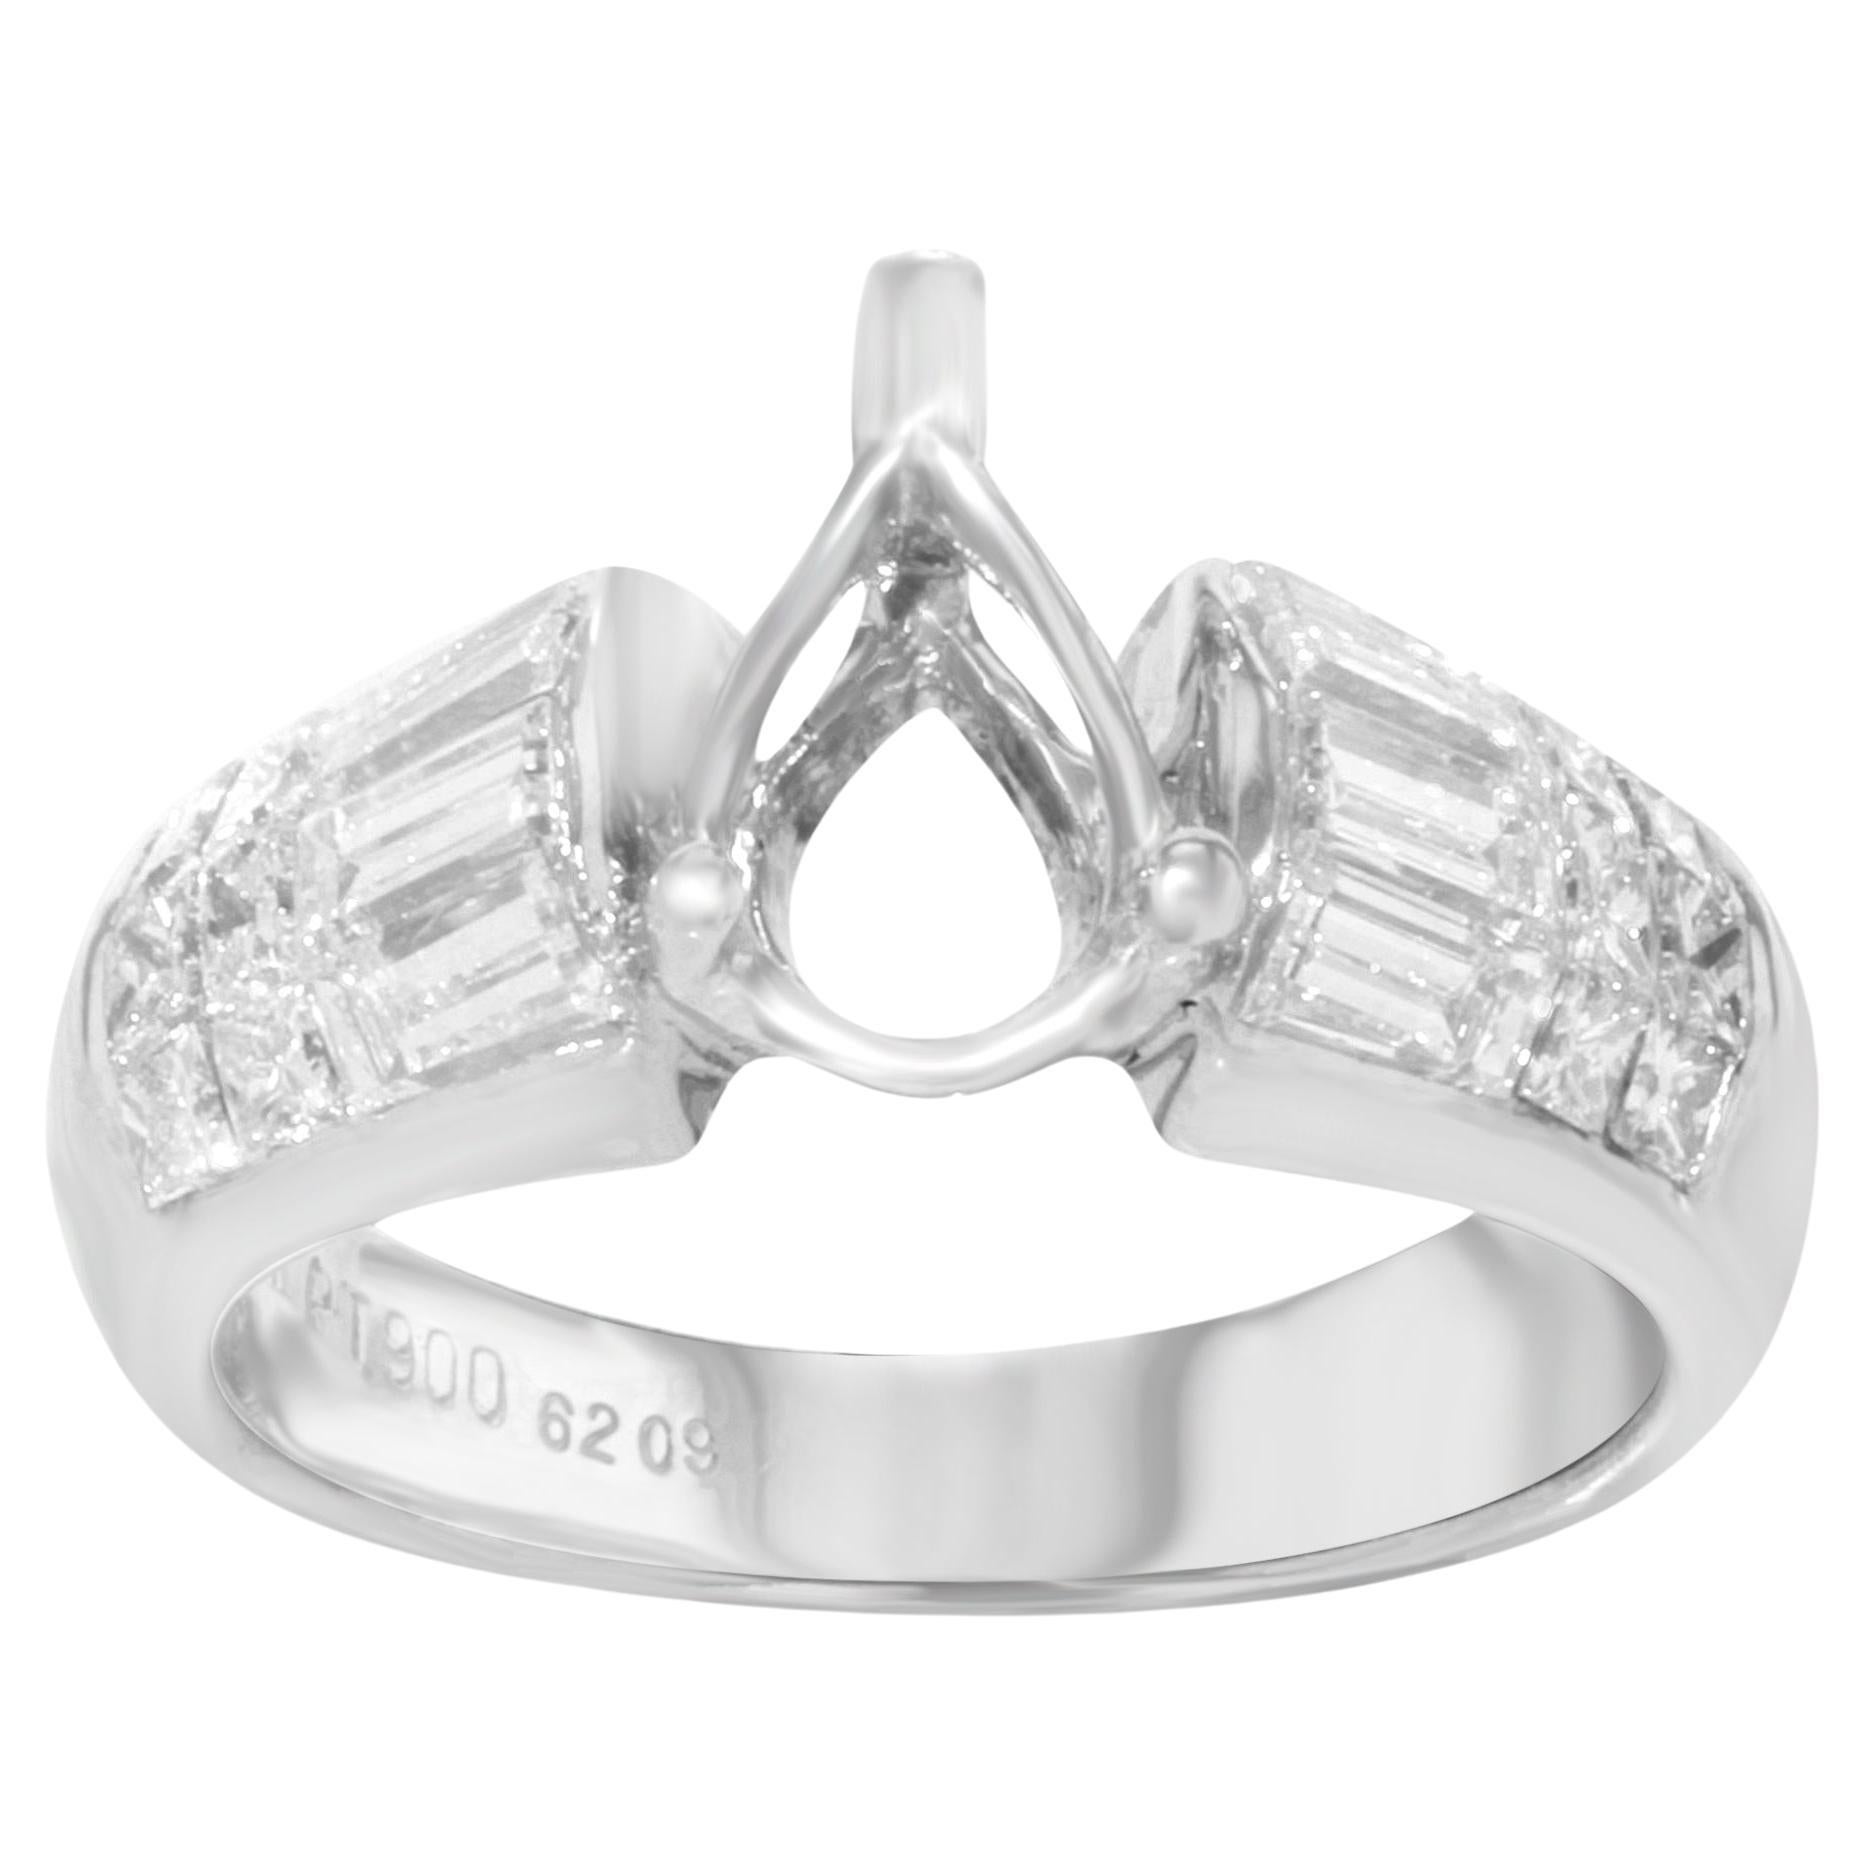 Rachel Koen Diamond Accent Engagement Ring Casting Platinum 1.25 Cttw For Sale